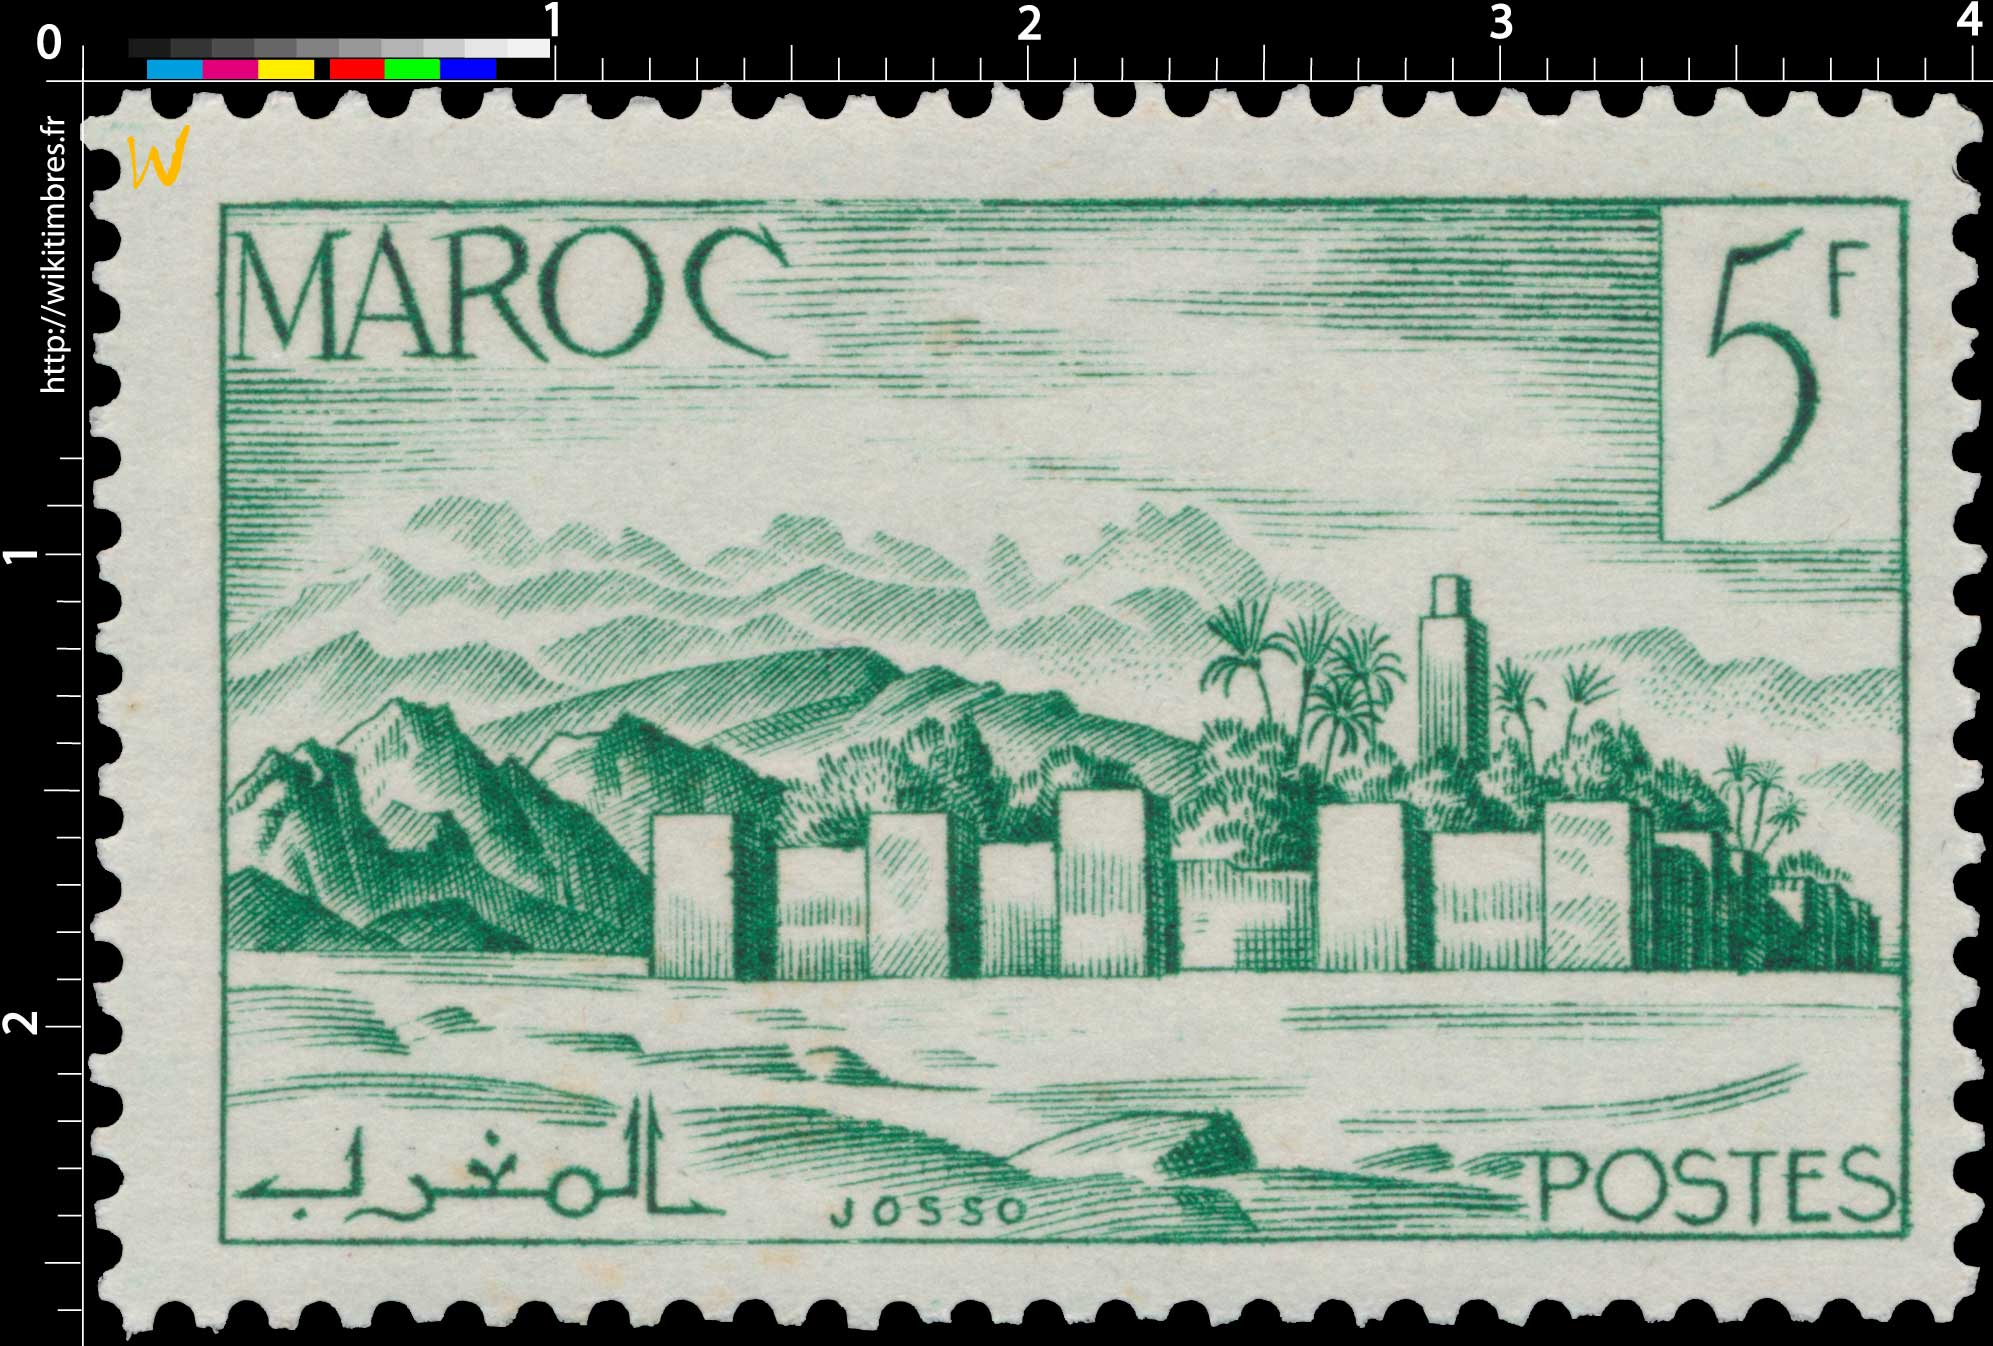 1947 Maroc - Remparts